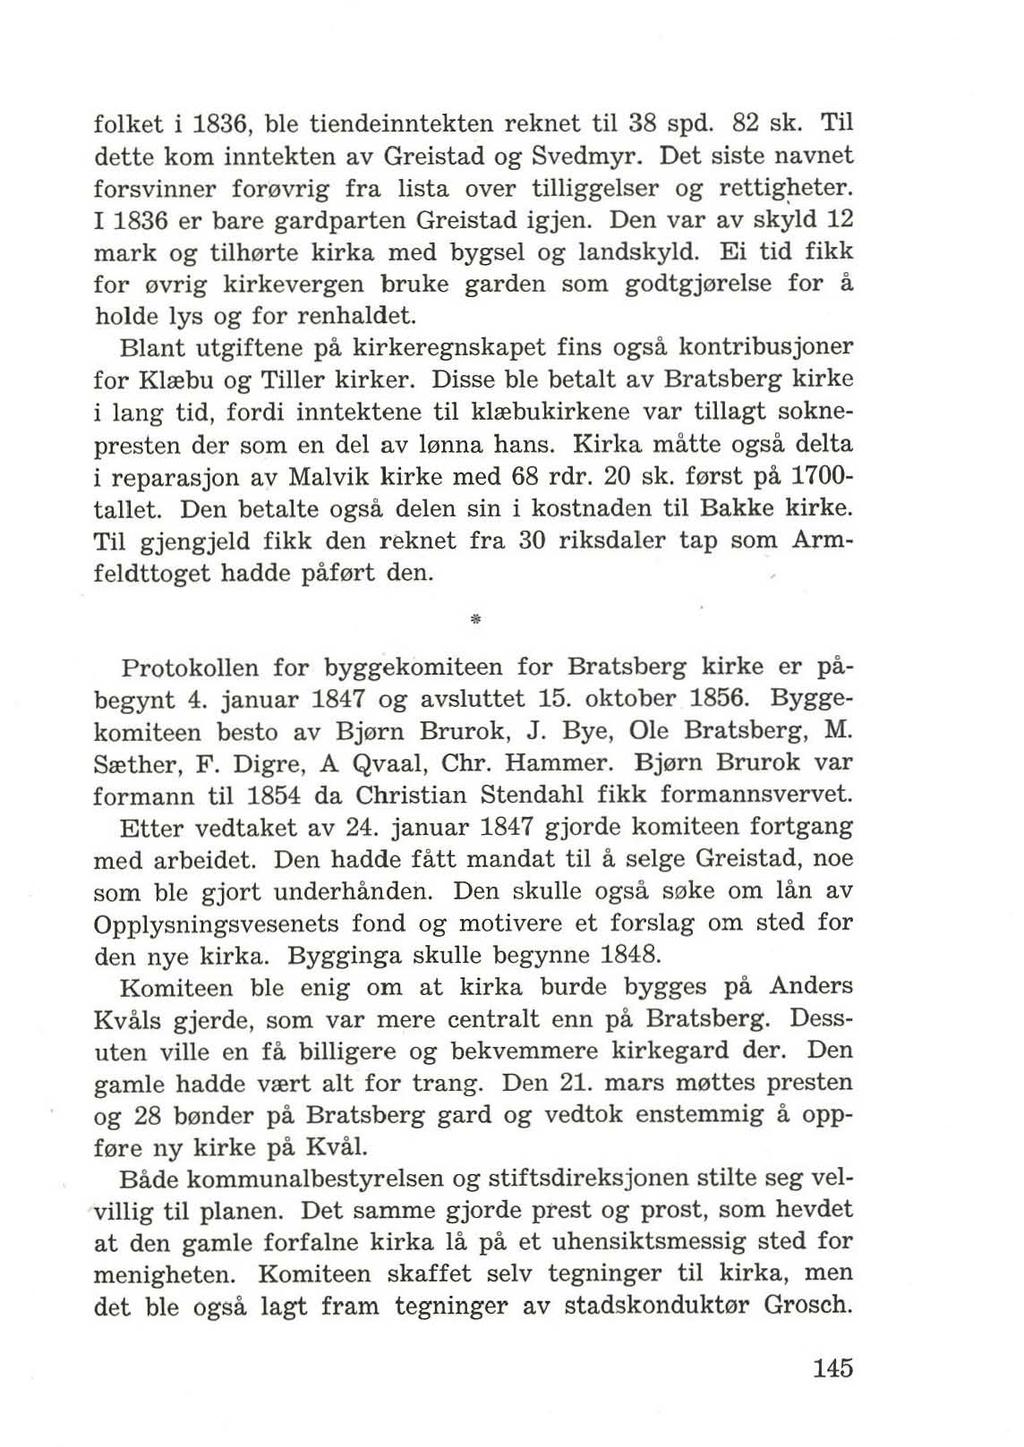 folket i 1836, ble tiendeinntekten reknet til 38 spd. 82 sk. Til dette kom inntekten av Greistad og Svedmyr. Det siste navnet forsvinner for0vrig fra lista over tilliggelser og rettigheter.